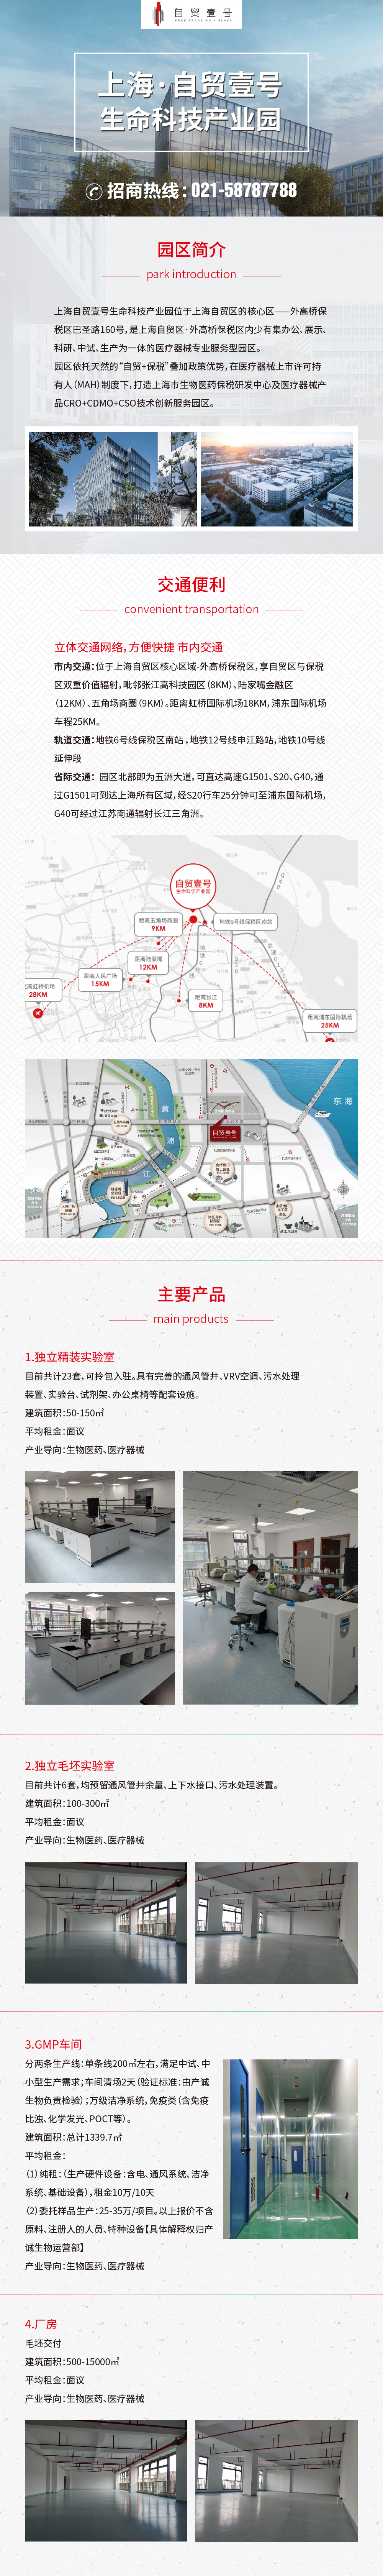 上海自贸壹号生命科技产业园图片1